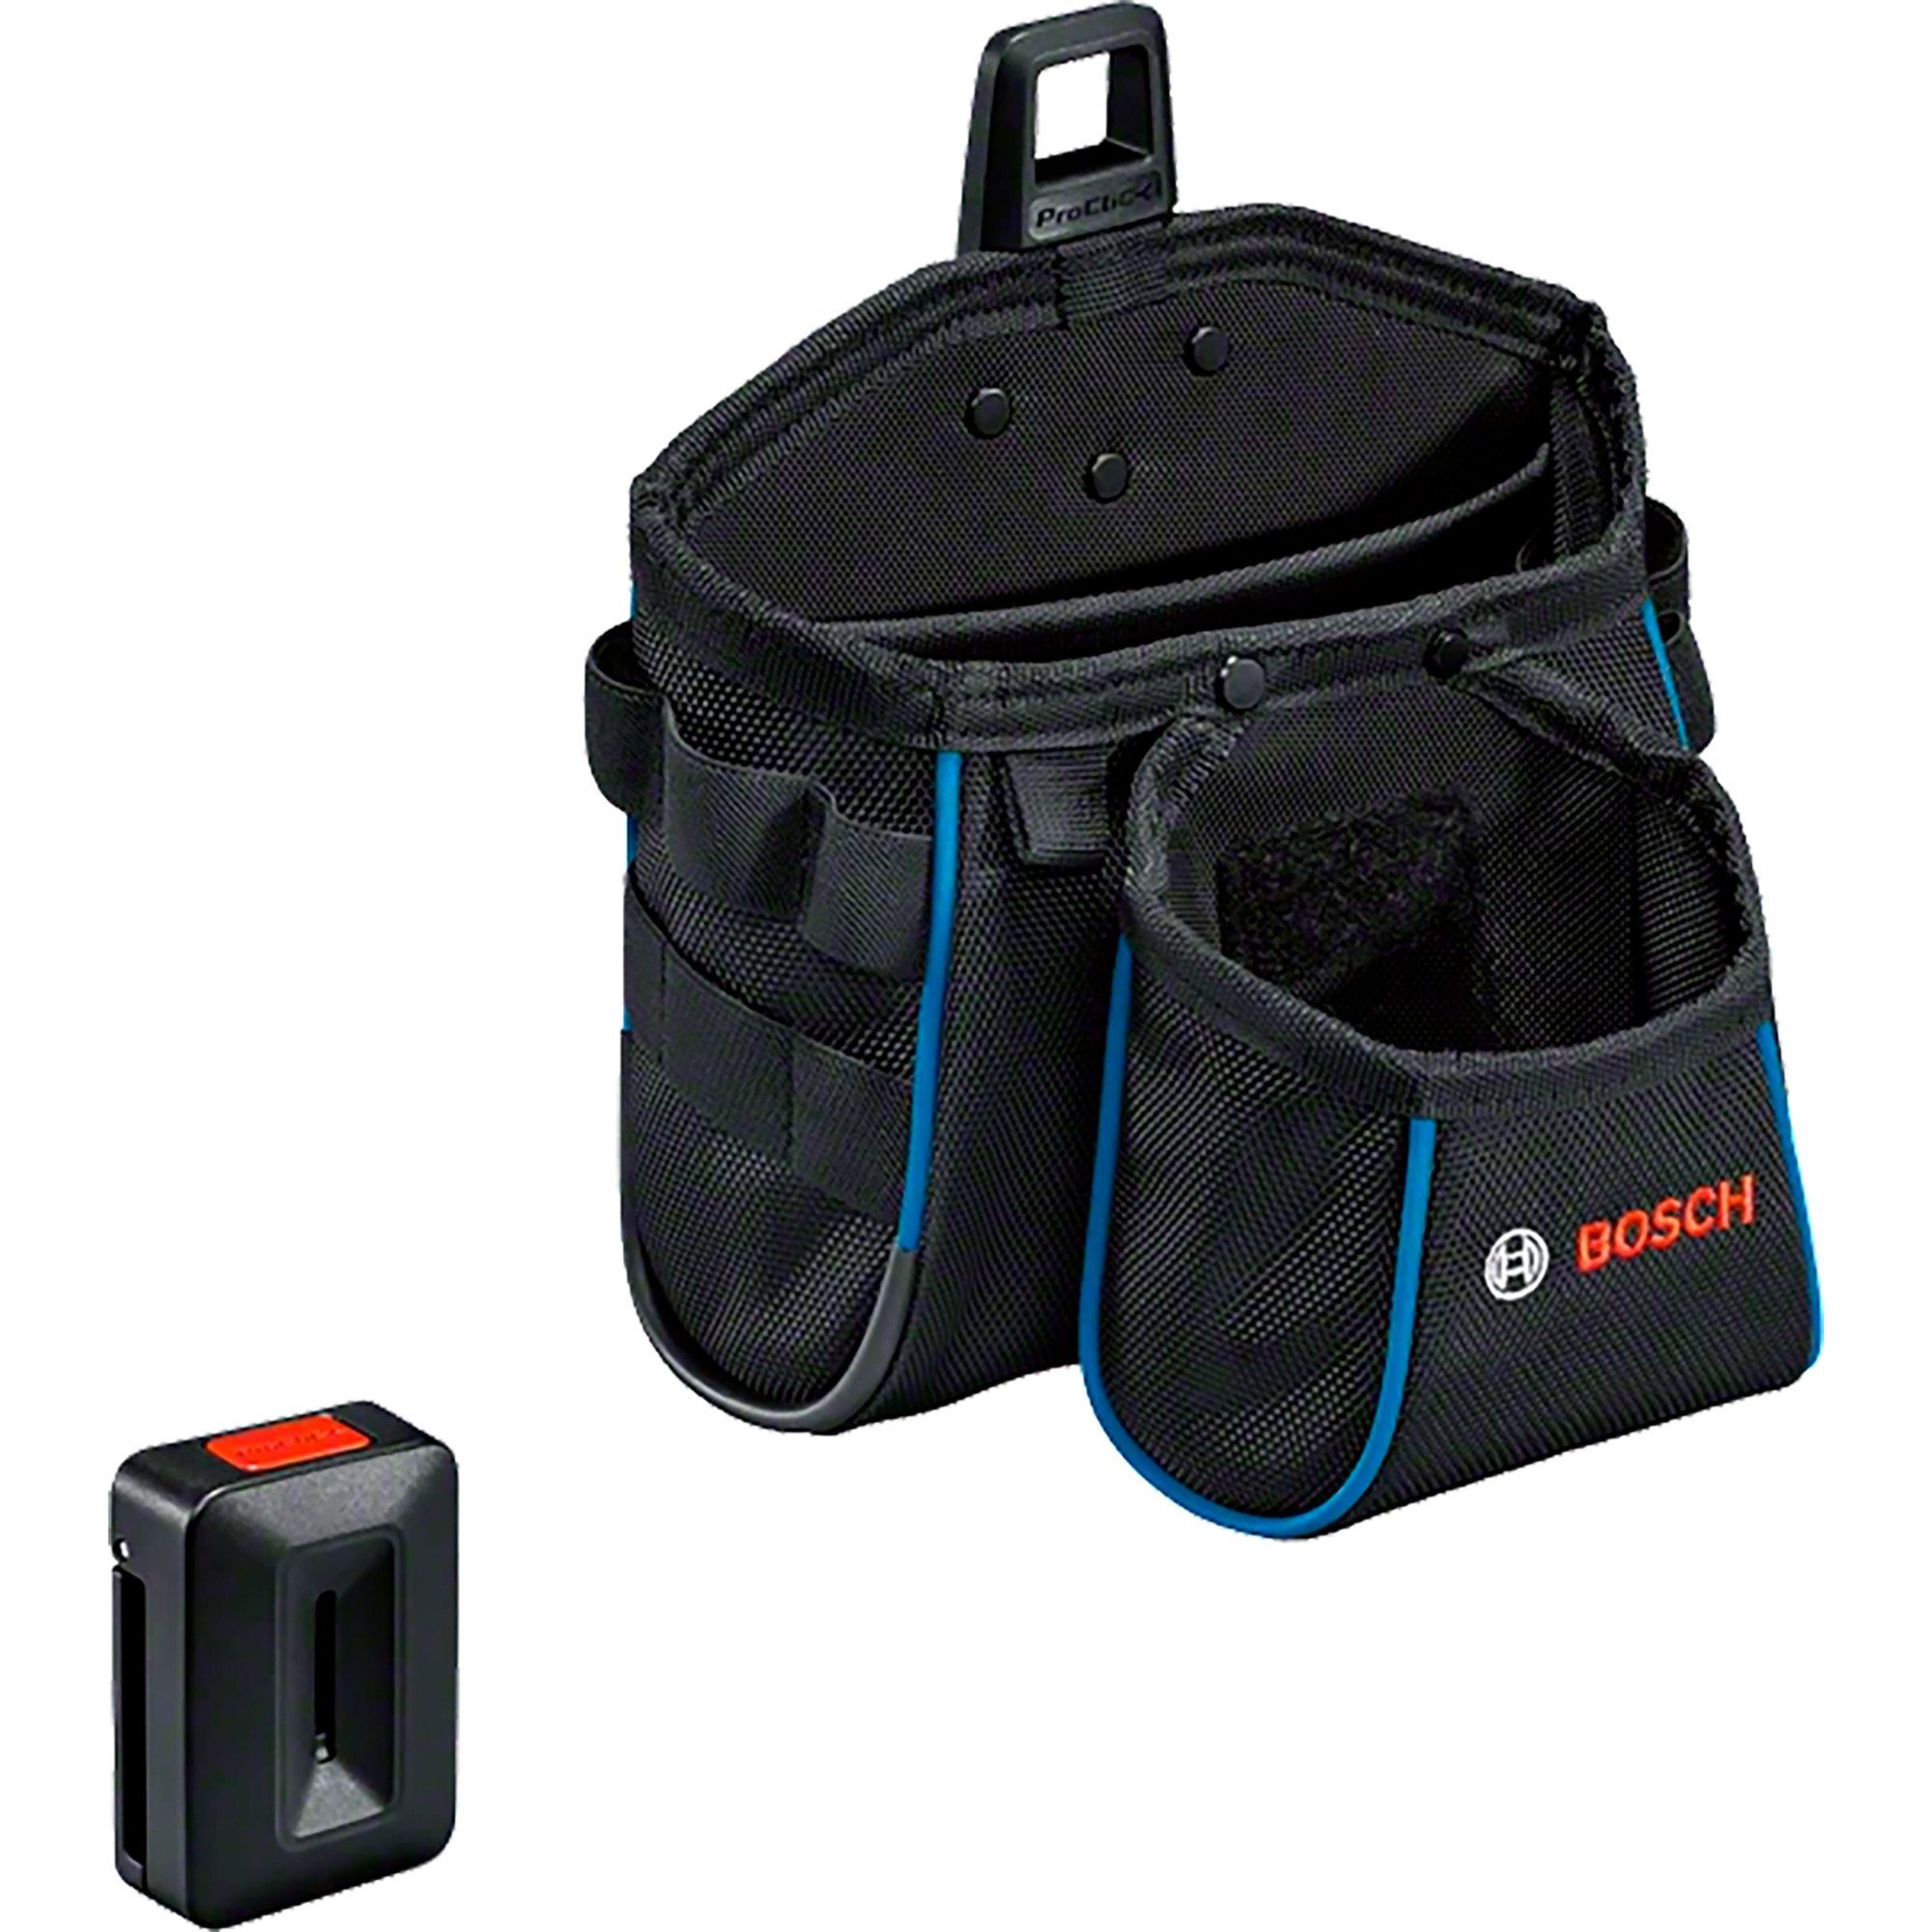 Professional GWT Werkzeugbox 2 BOSCH Bosch Tasche Professional,